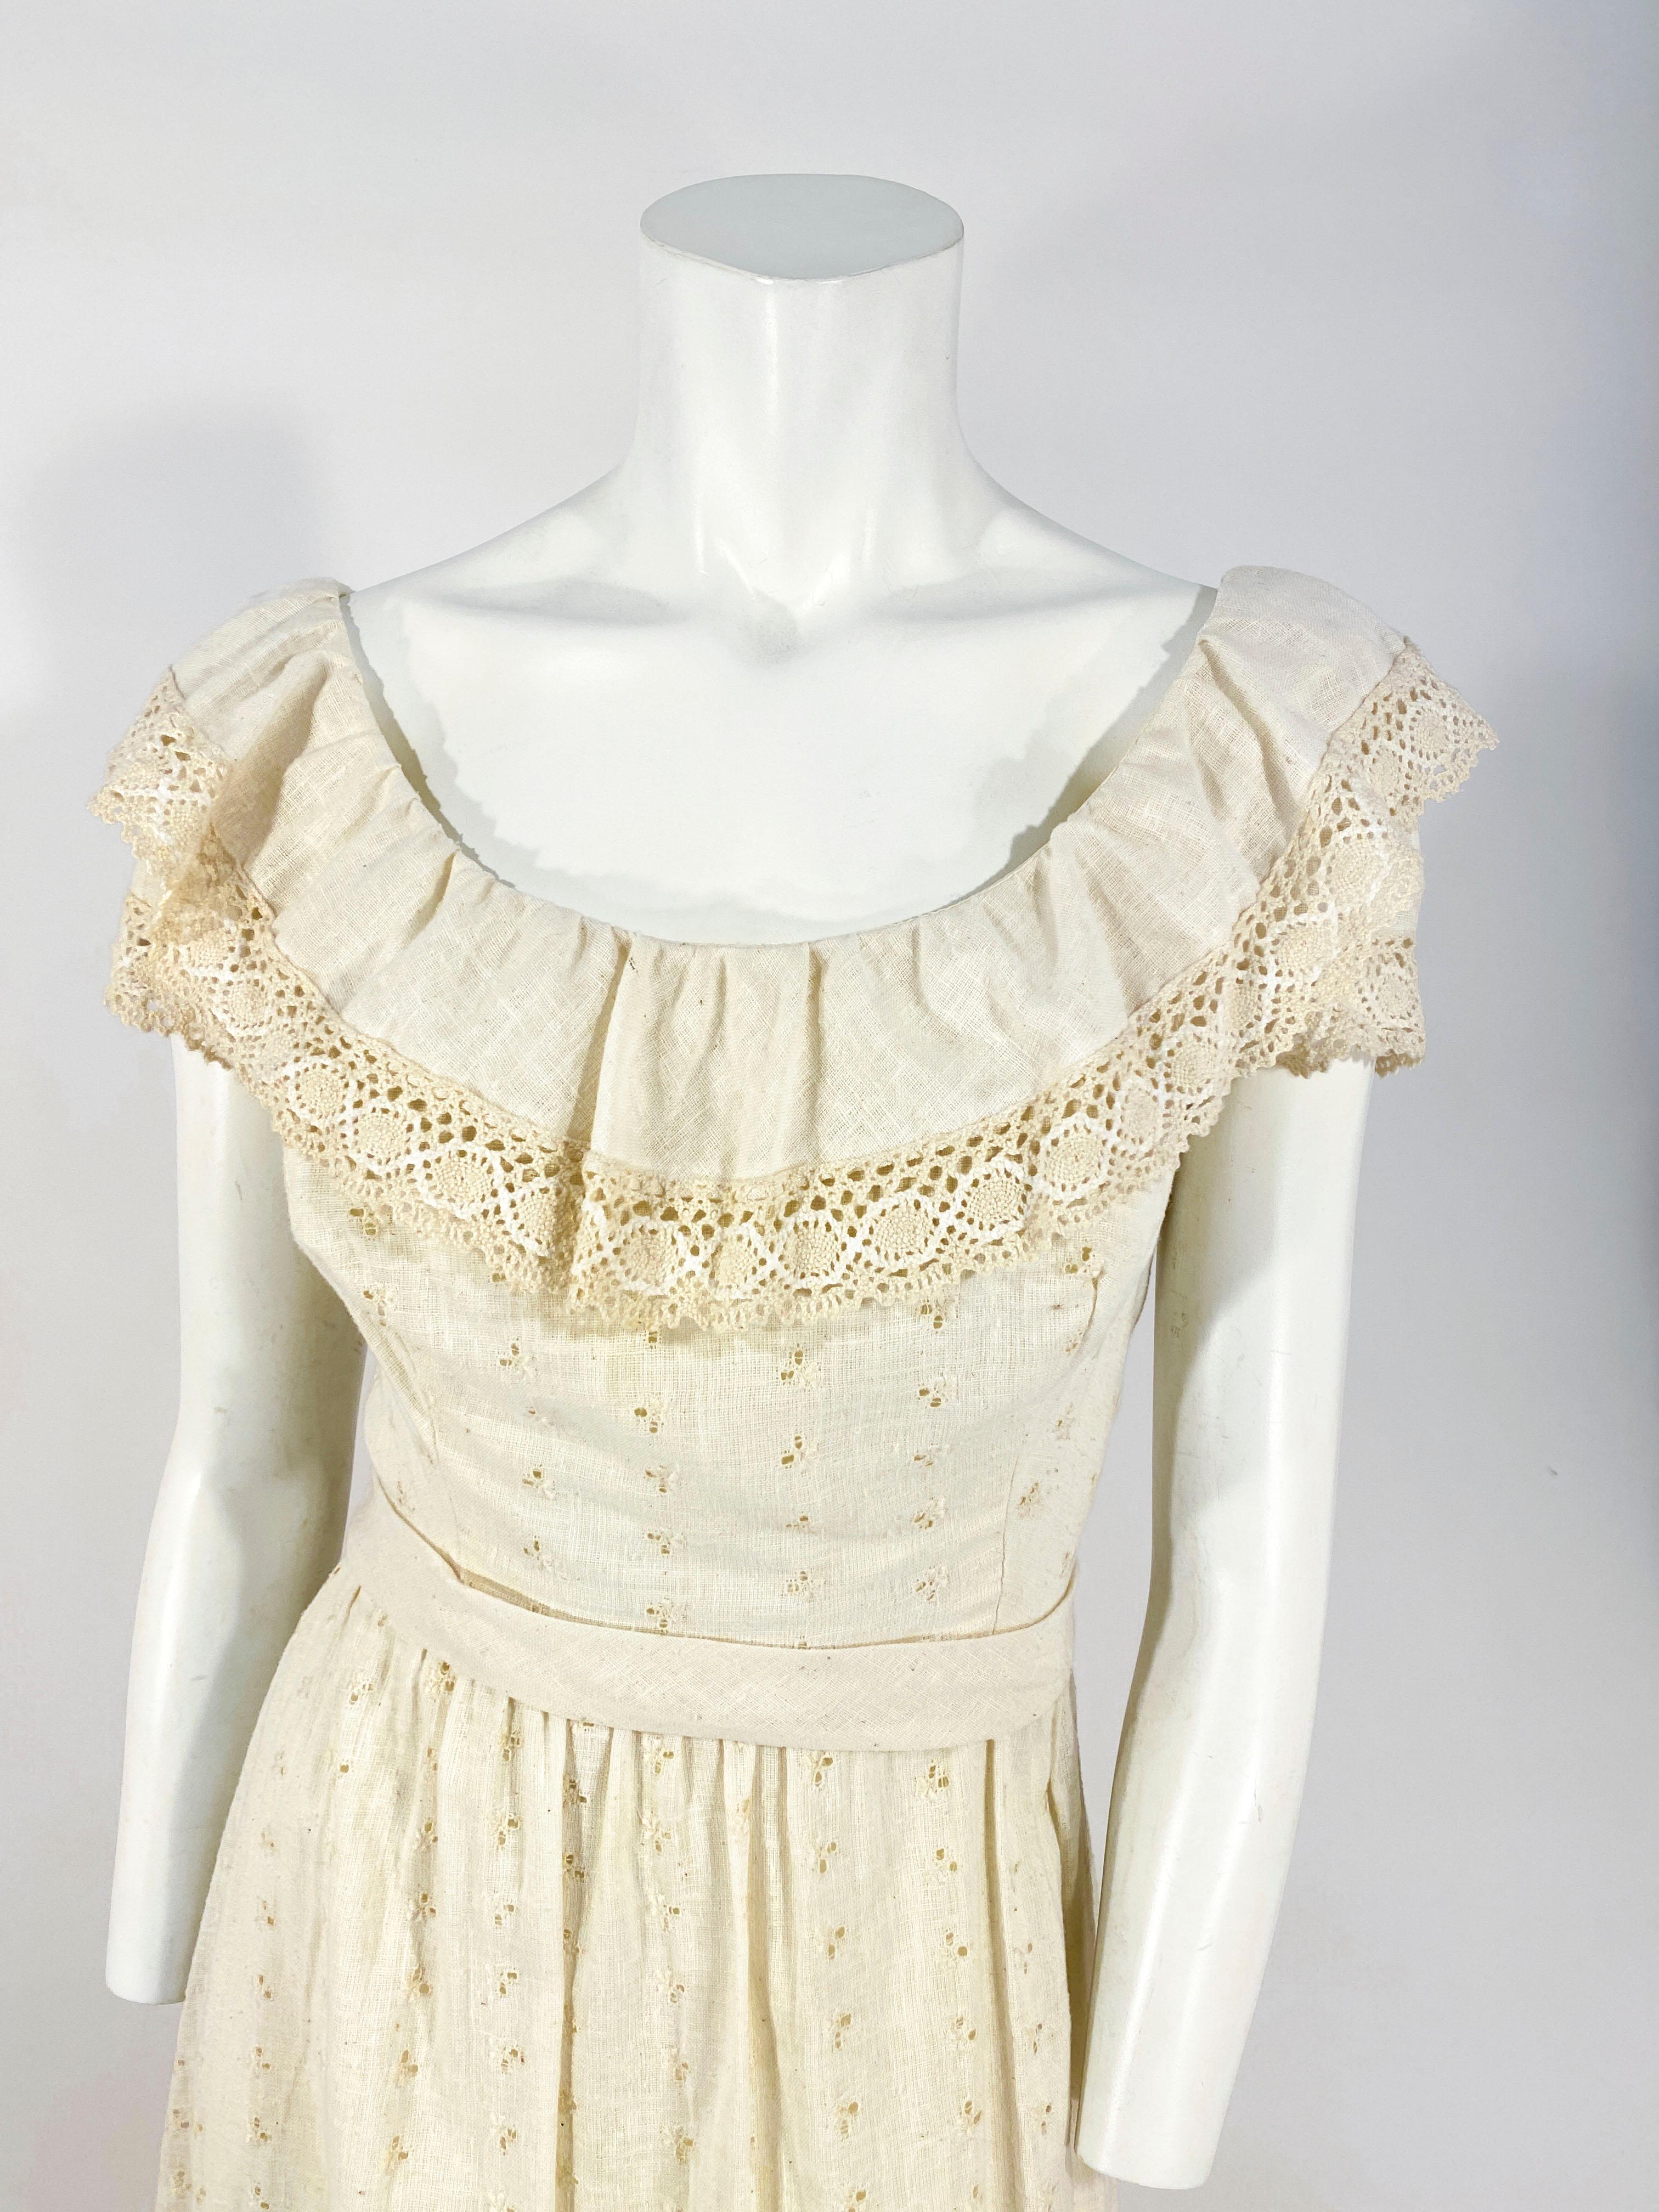 robe des années 1960 faite sur mesure avec des accents d'œillets, des inserts au crochet machine en 4 bandes sur la jupe, une encolure à volants sur l'épaule, des manches en dentelle et une ceinture appliquée. Le dos a une fermeture à glissière.